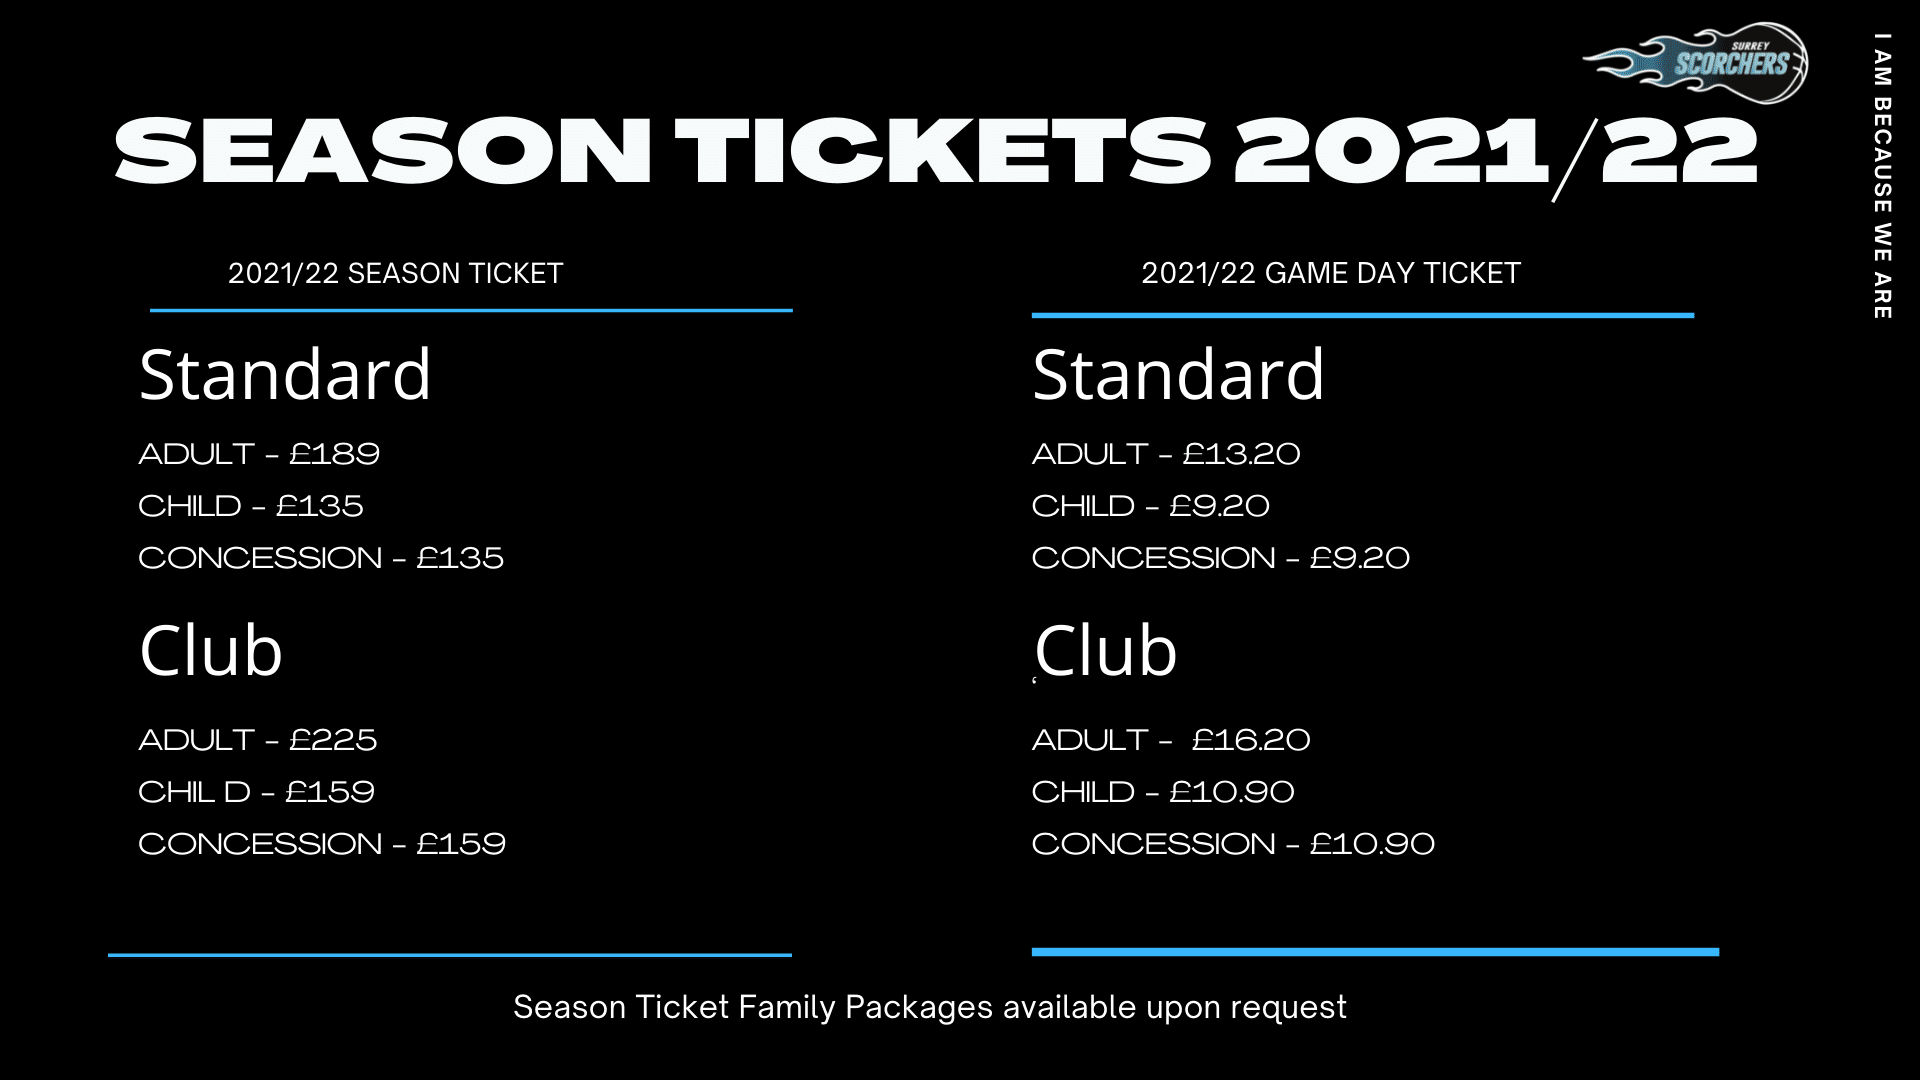 Season Ticket Prices